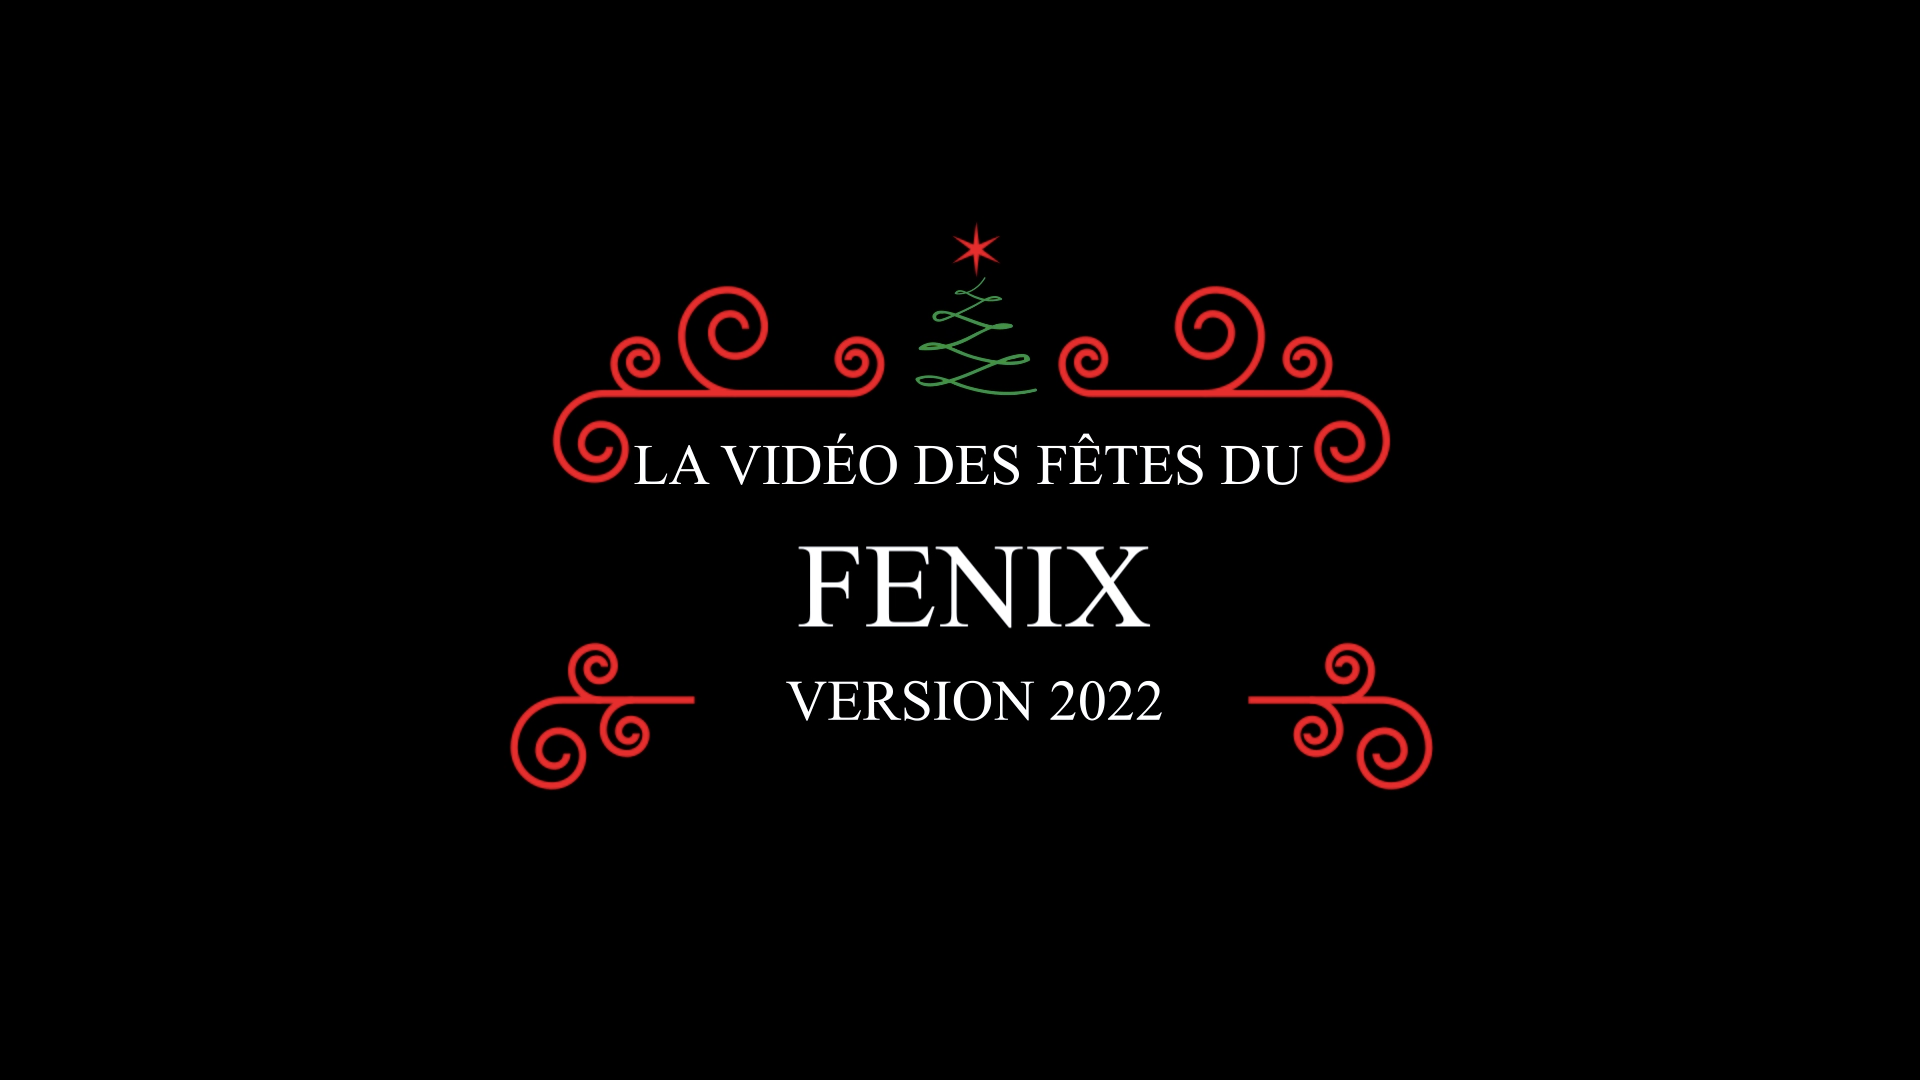 La vidéo des fêtes du FENIX : version 2022 !